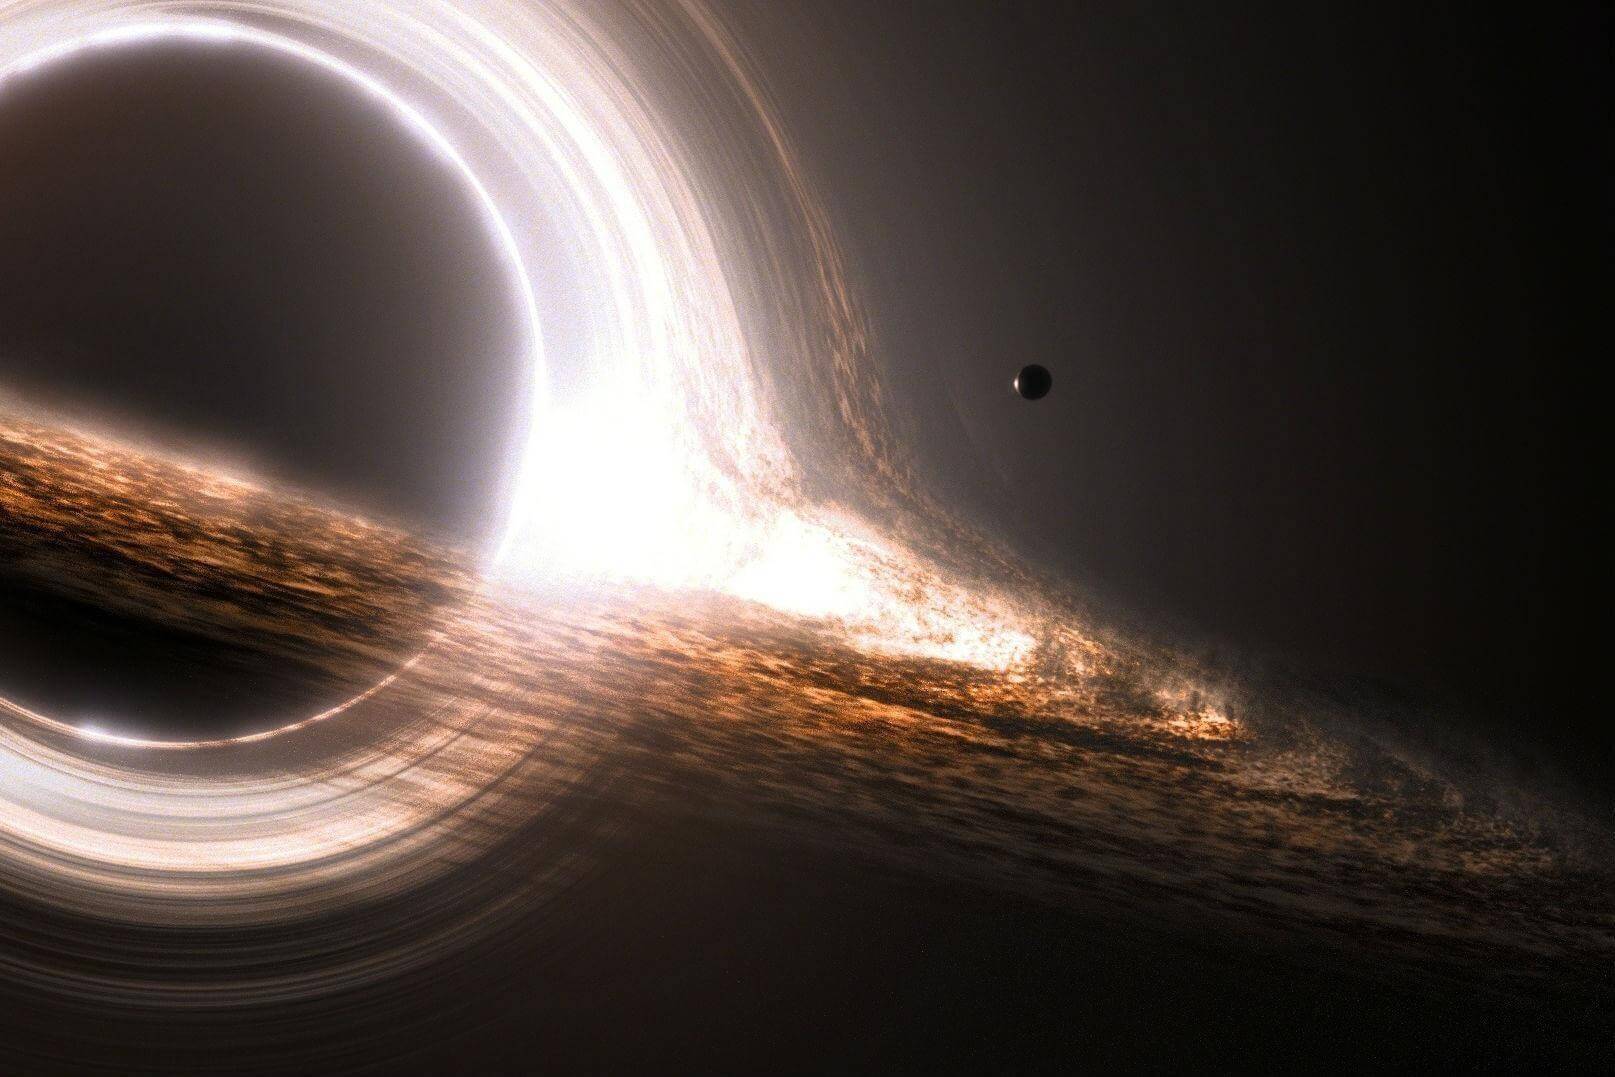 の研究者が開発した巨大ブラックホールなのか疑問で